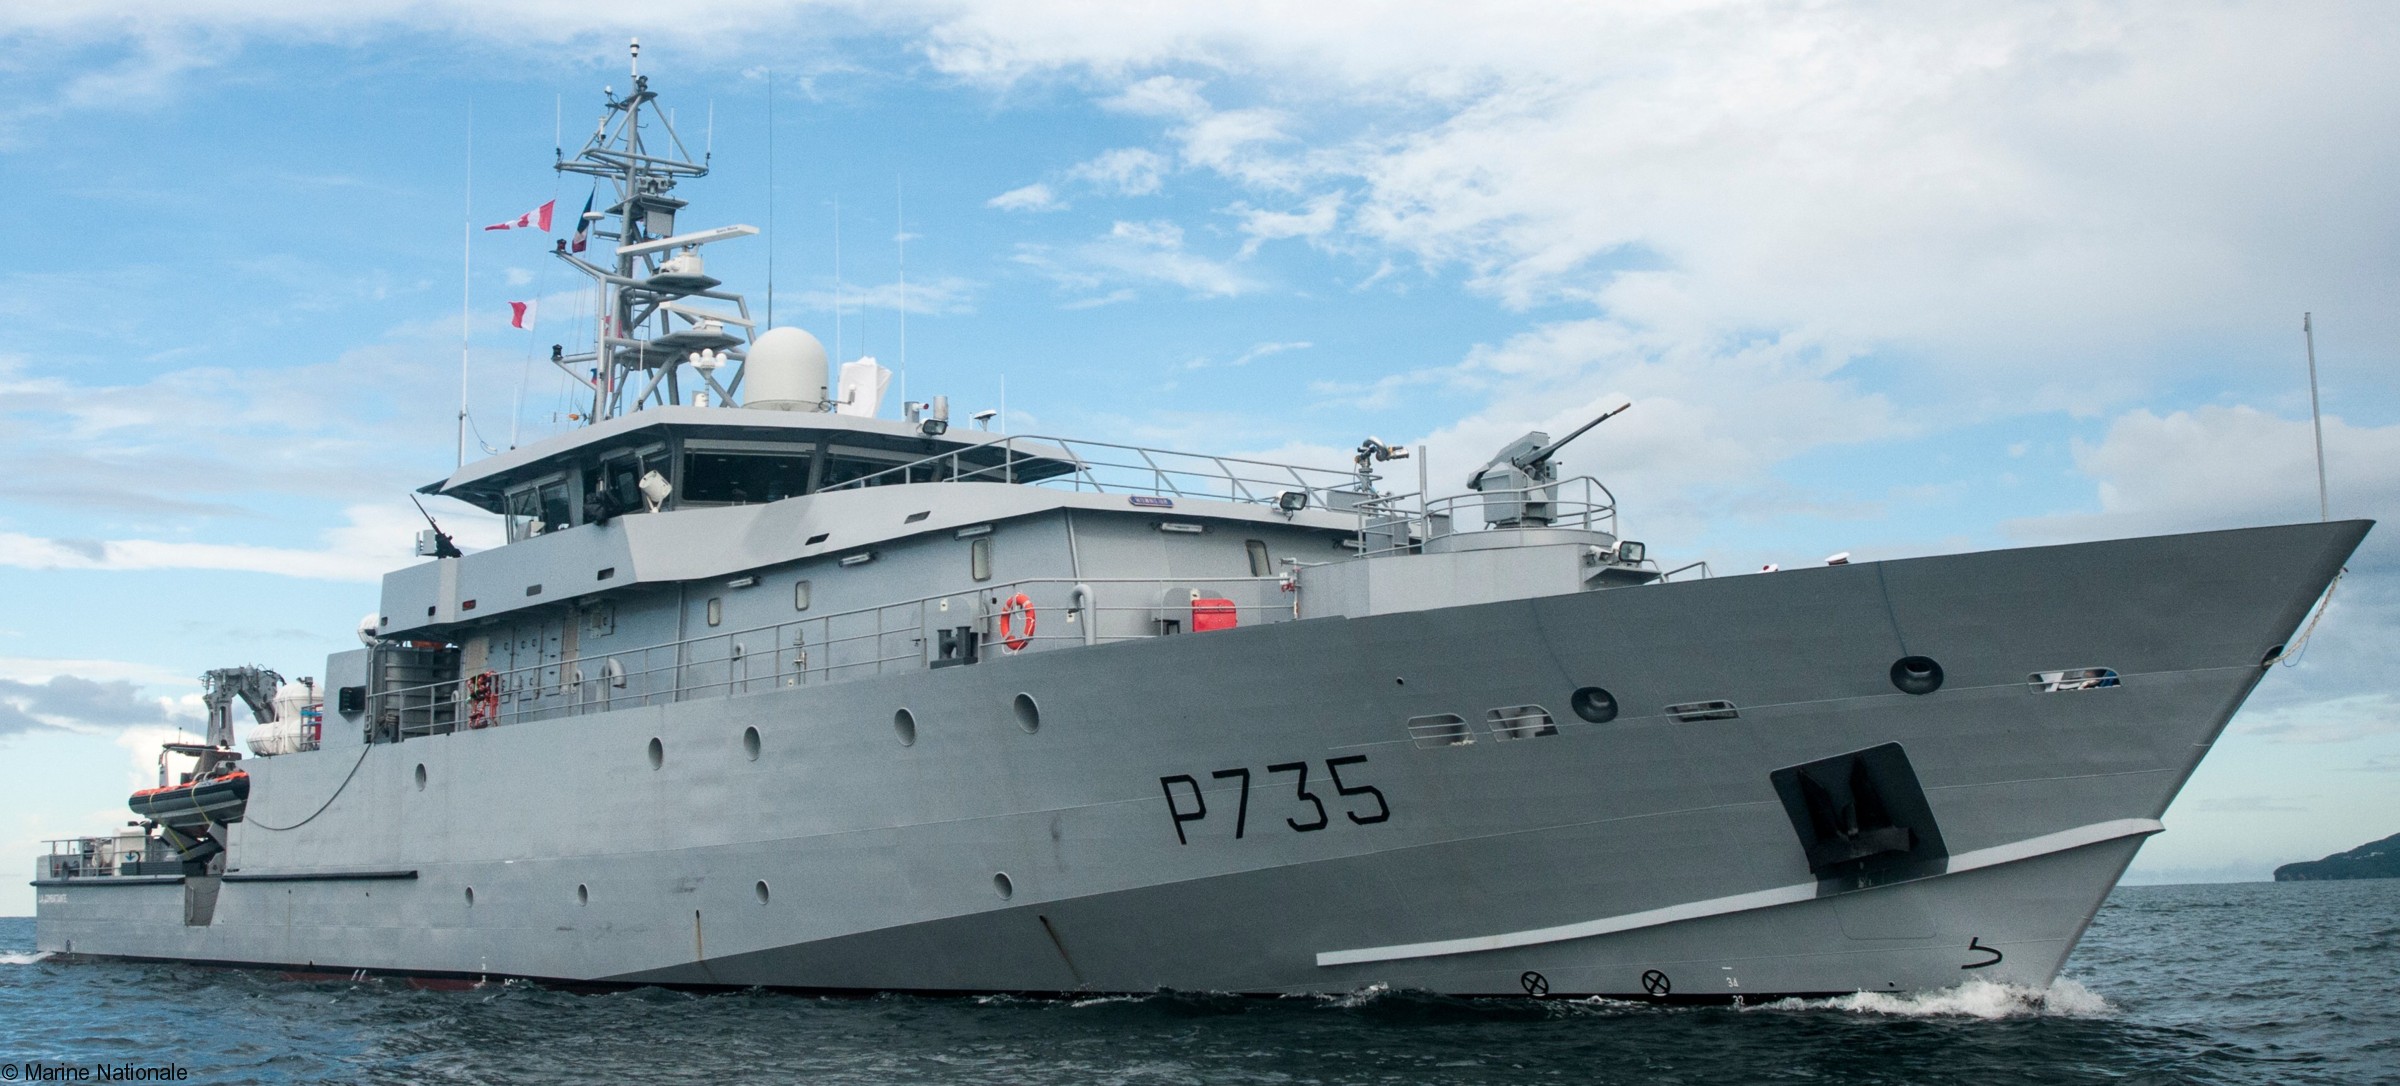 p-735 la combattante confiance class offshore patrol vessel opv patrouilleur antilles guyane pag french navy marine nationale 04